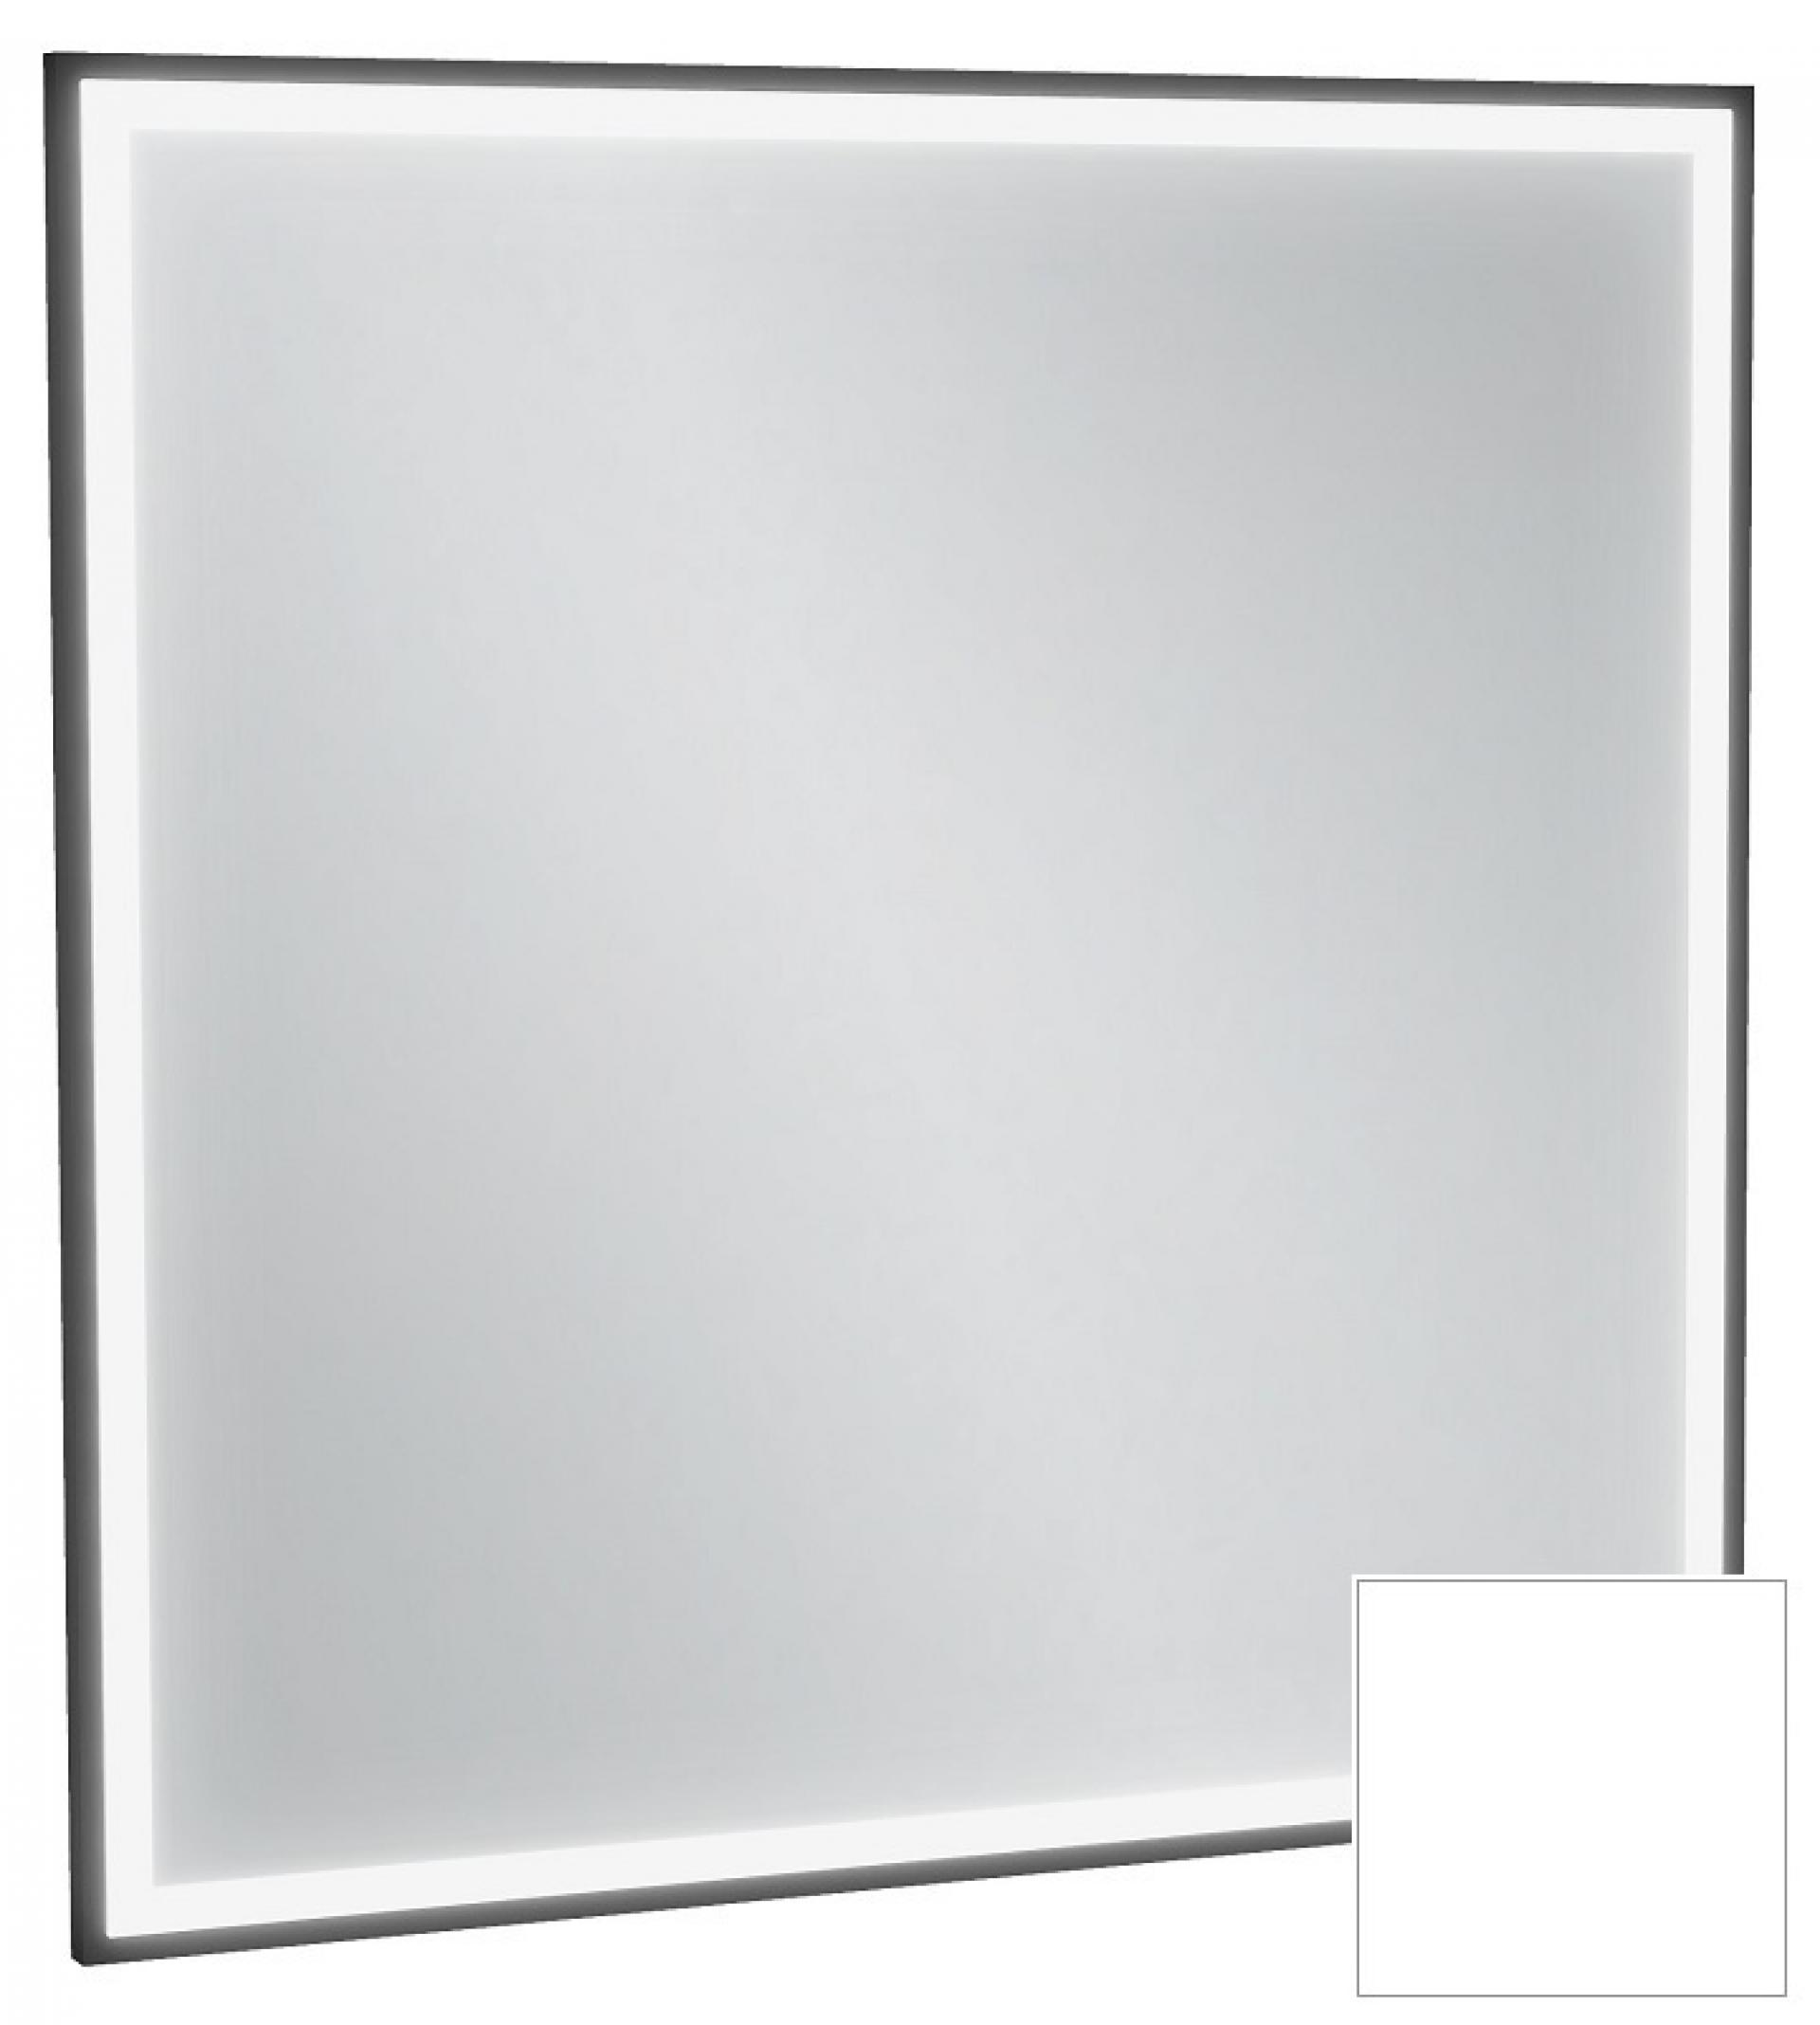 Зеркало с подсветкой 80 см Jacob Delafon Allure EB1435-F30, лакированная рама белый сатин